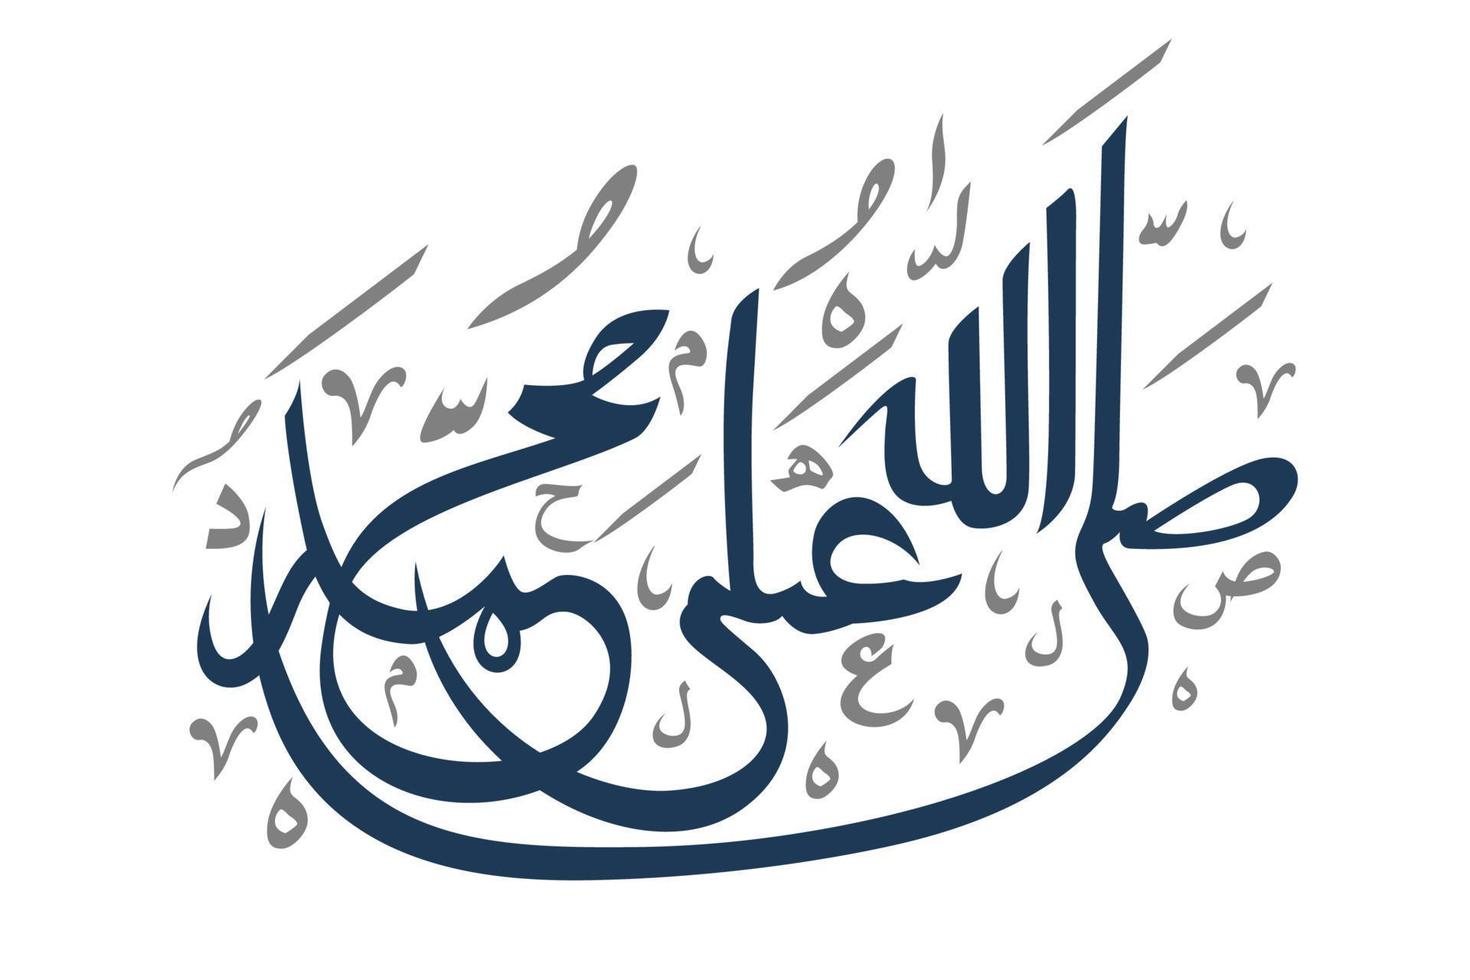 calligrafia araba hallallahu ala muhammad. tradotto Dio benedica Maometto vettore